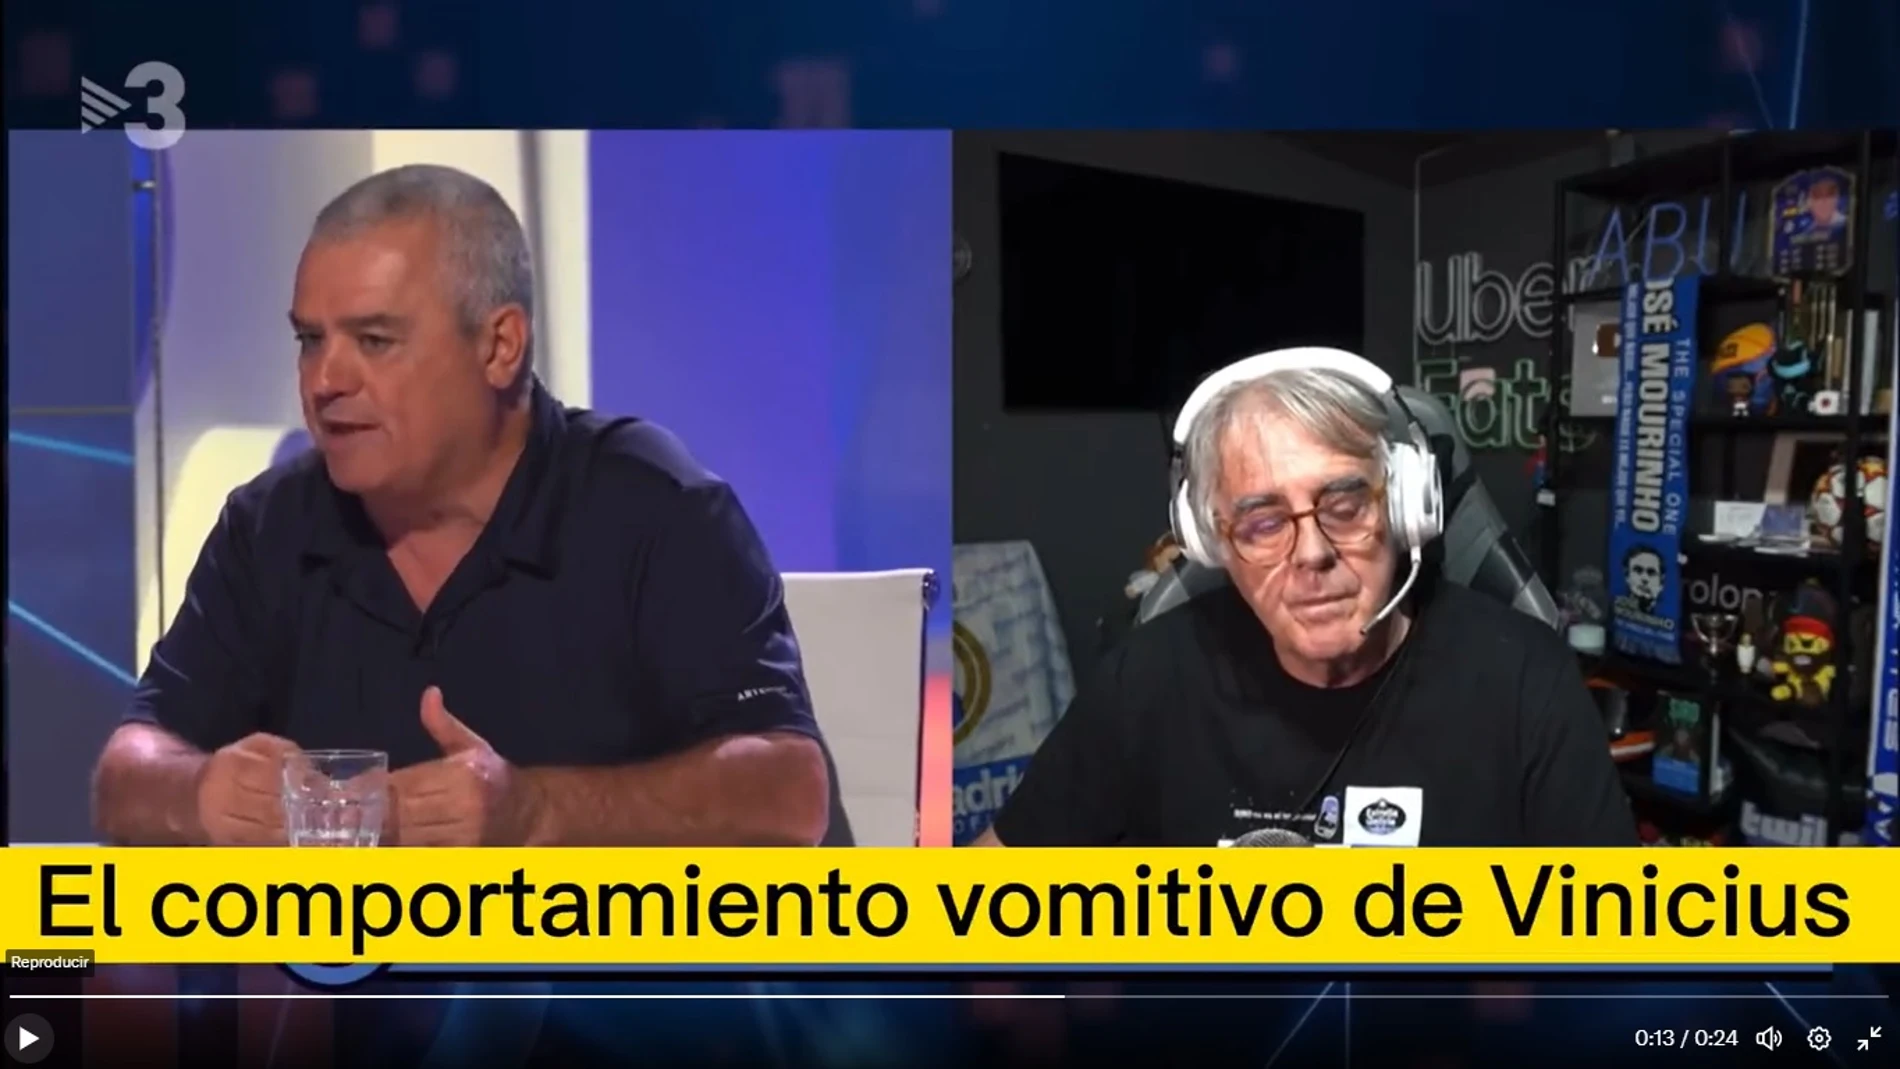 El comentario en TV3 contra Vinicius